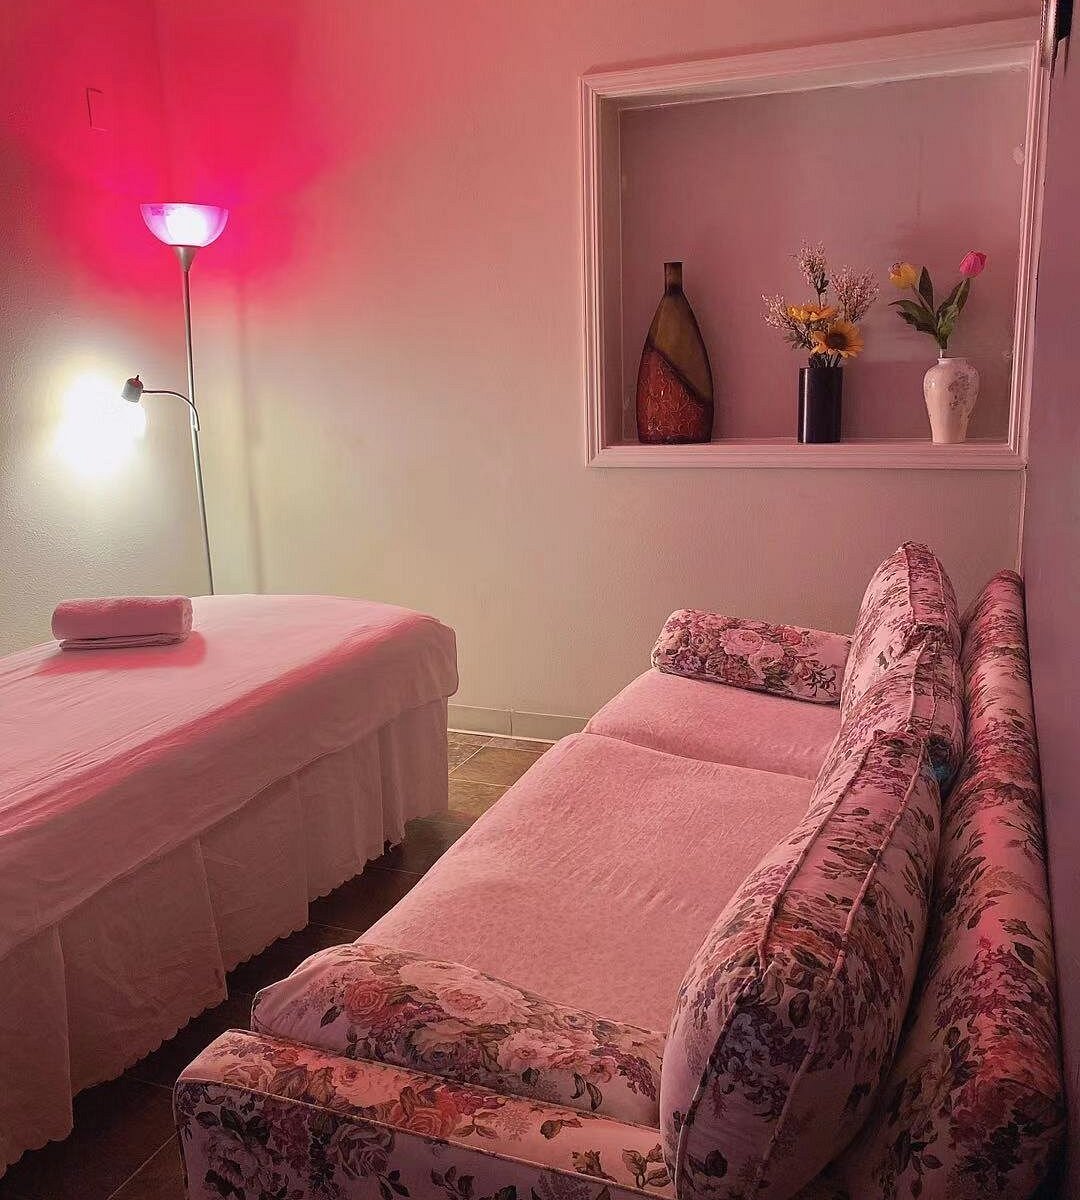 Lily Massage Spa Tacoma Ce Quil Faut Savoir Pour Votre Visite 1218